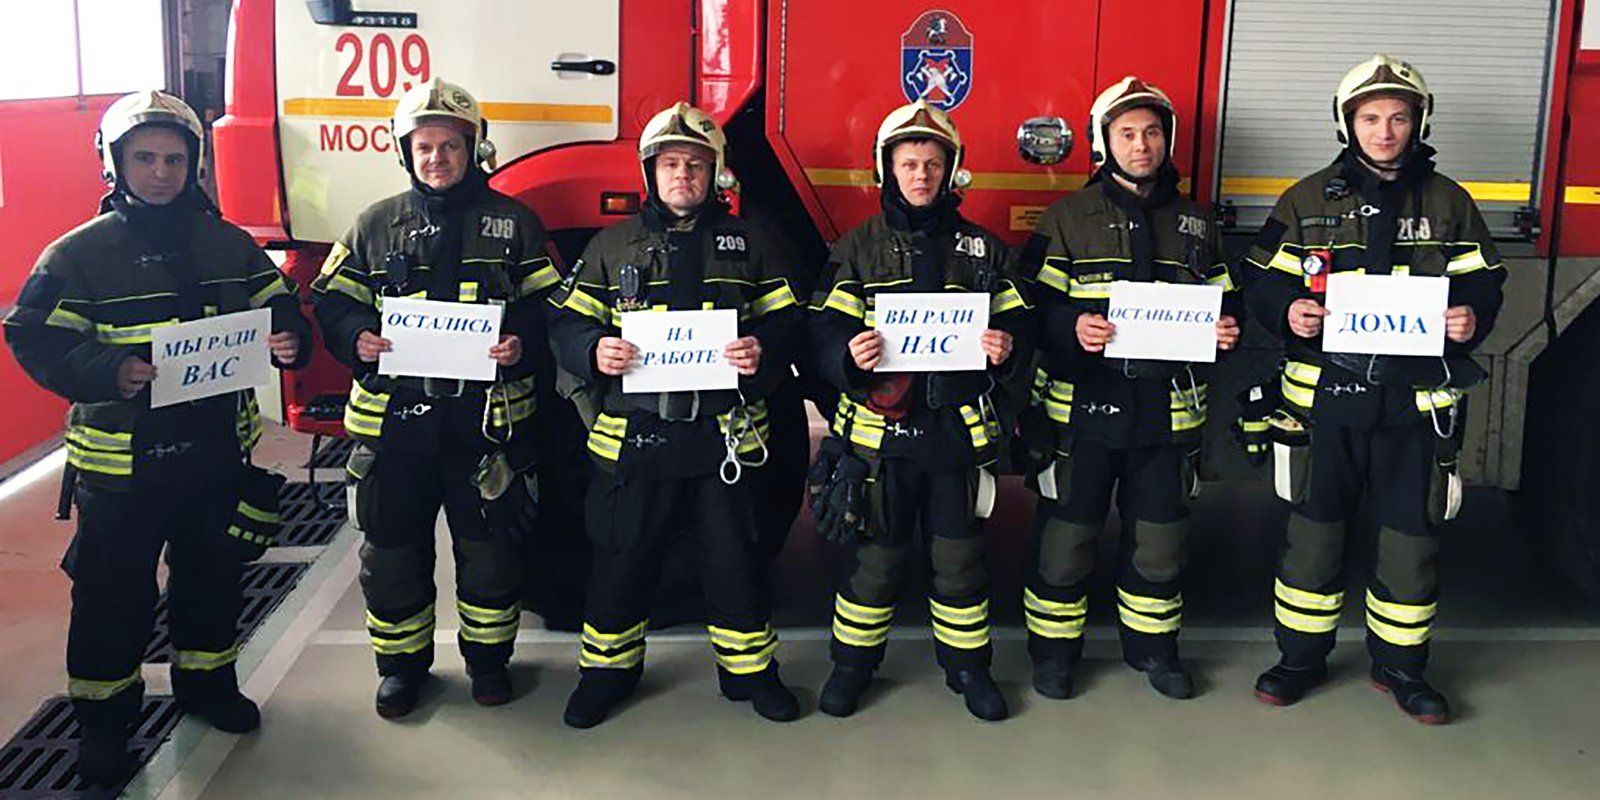 Московские пожарные и спасатели поддержали флешмоб «Оставайтесь дома». Фото: пресс-служба Управления по ТиНАО Департамента ГОЧСиПБ